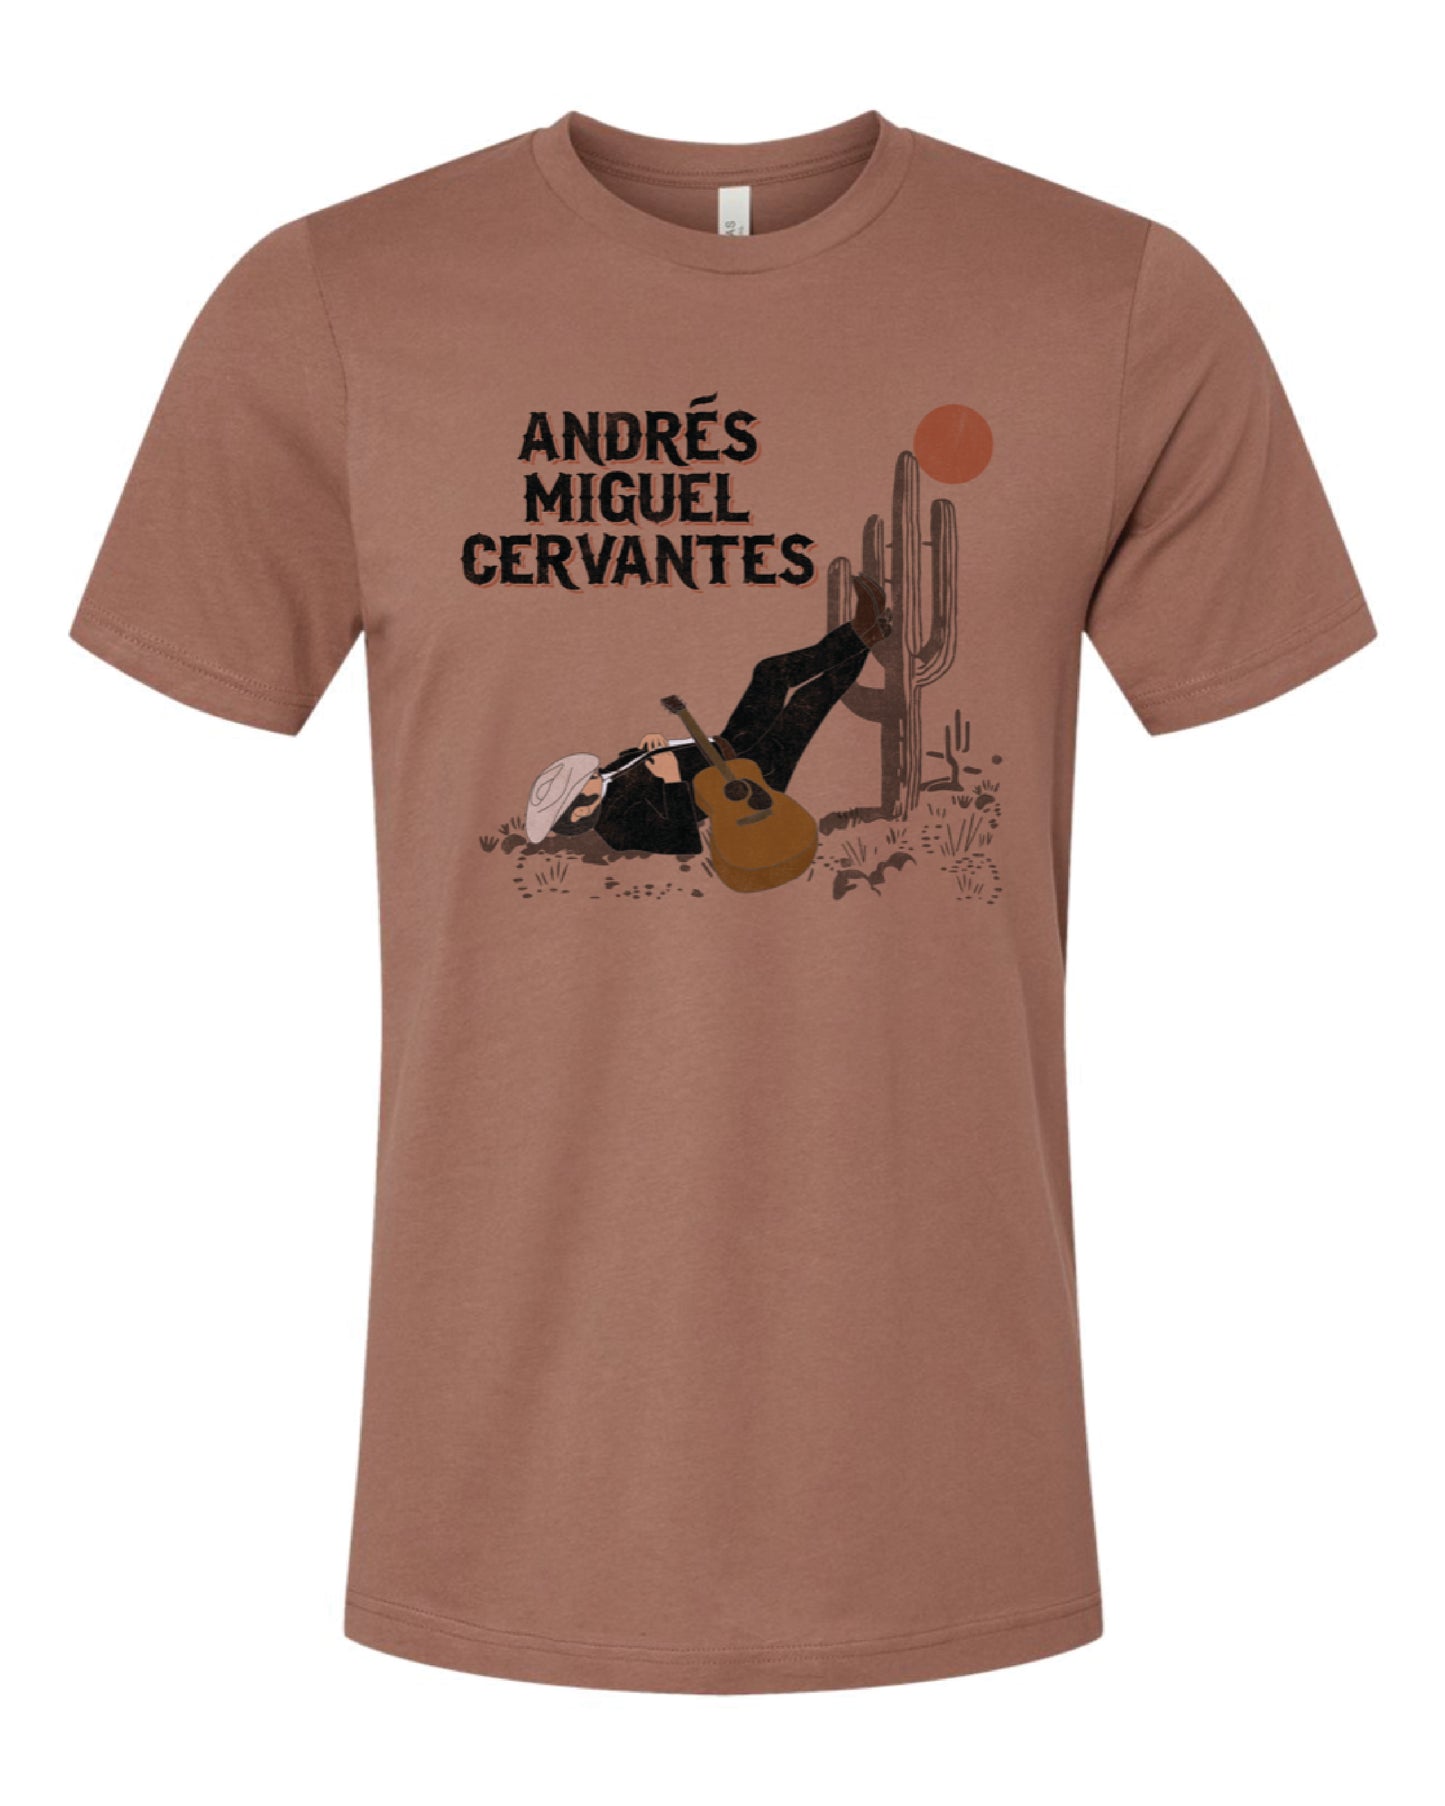 T shirt - Limited Edition Andrés Miguel Cervantes Tshirt -  Jacumba